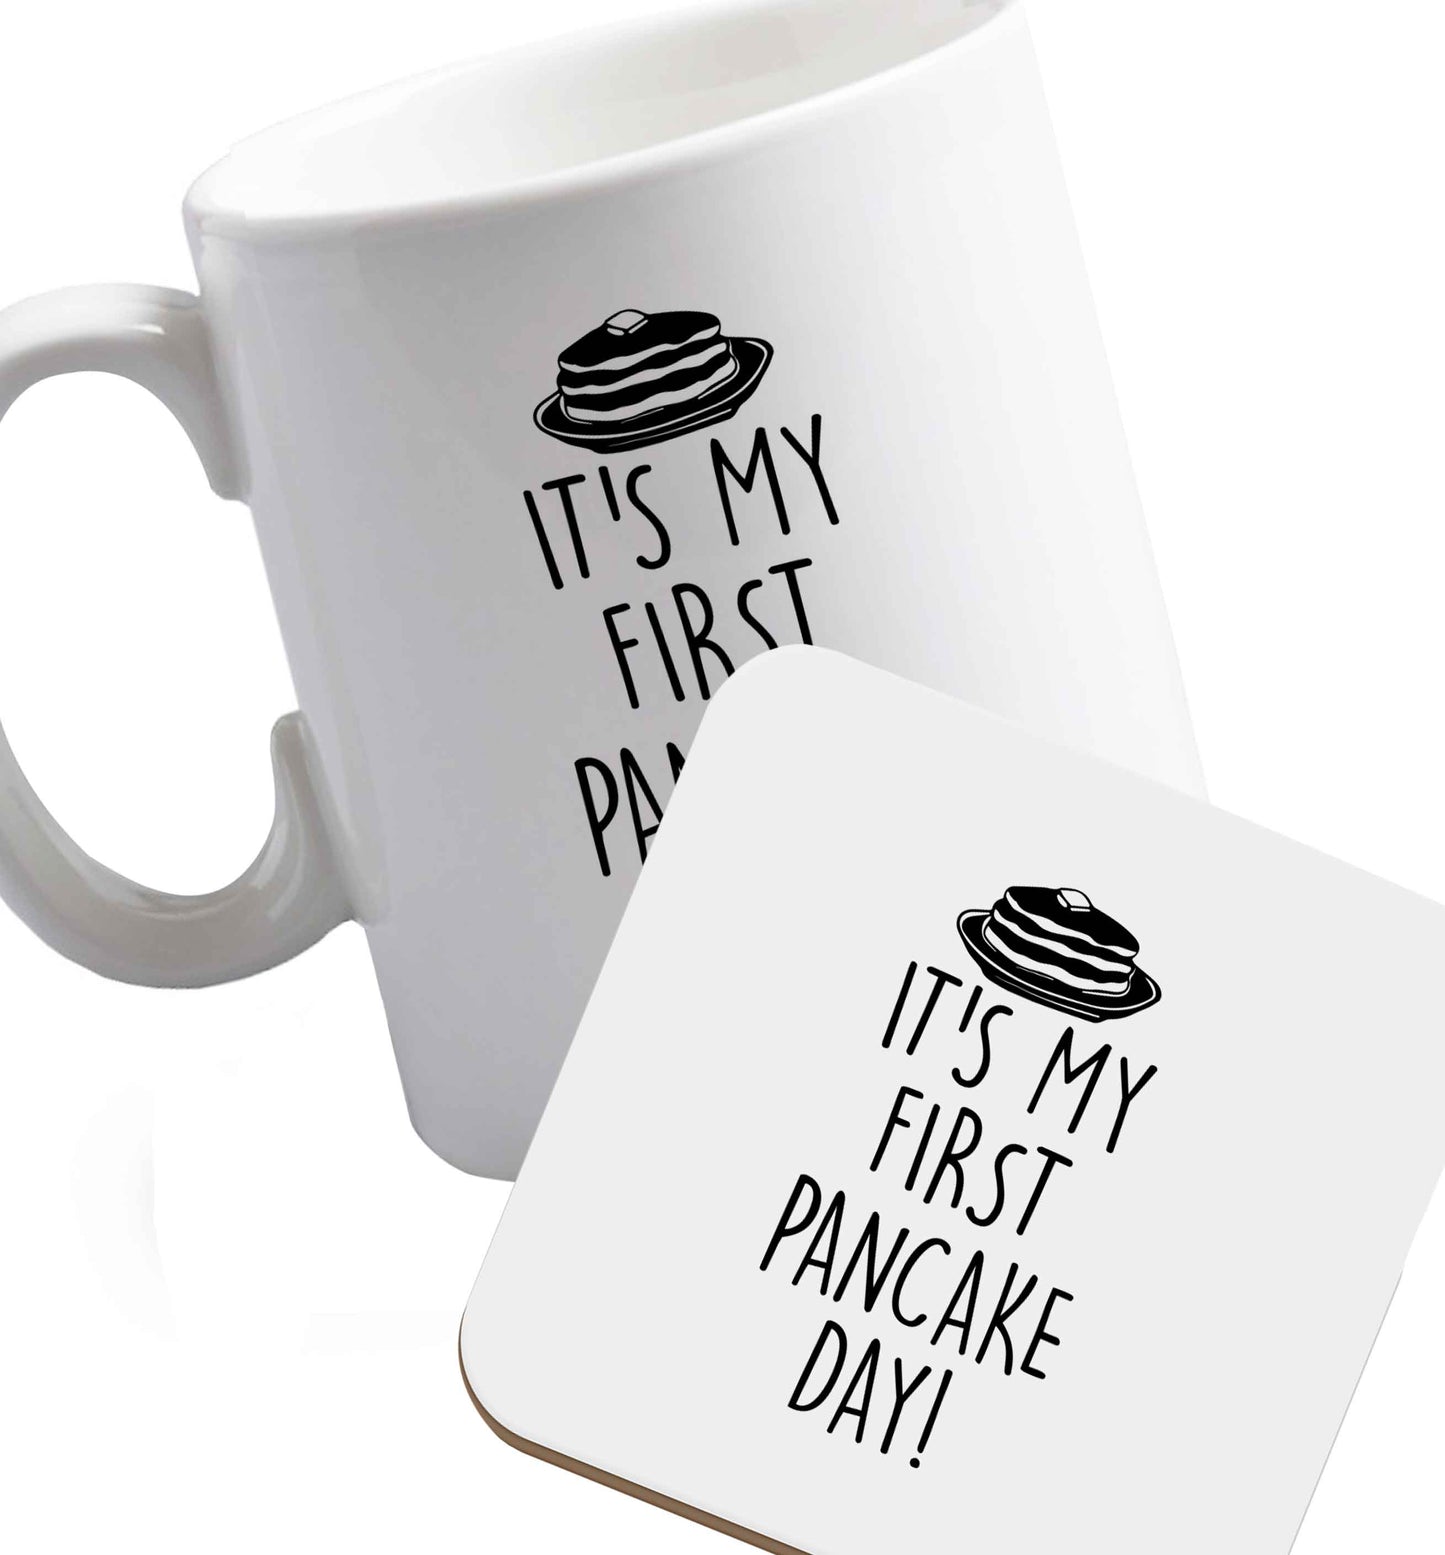 10 oz Favourite Type Pan Pancake ceramic mug and coaster set right handed